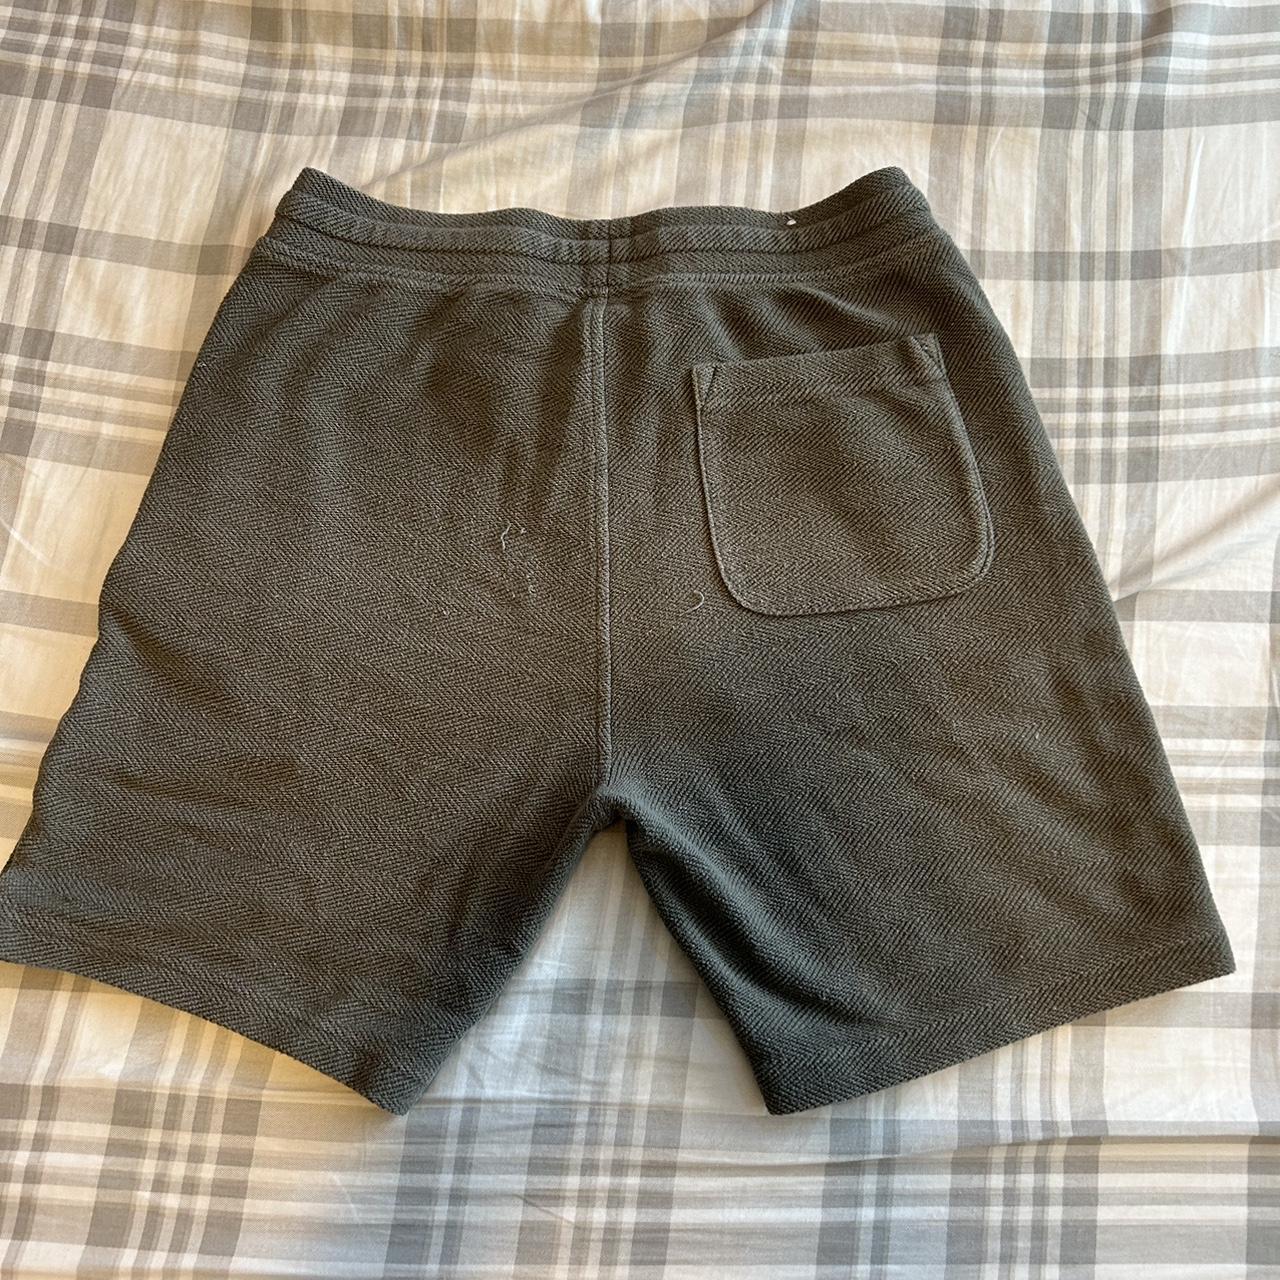 Goodfellow & Co. Men's Shorts | Depop